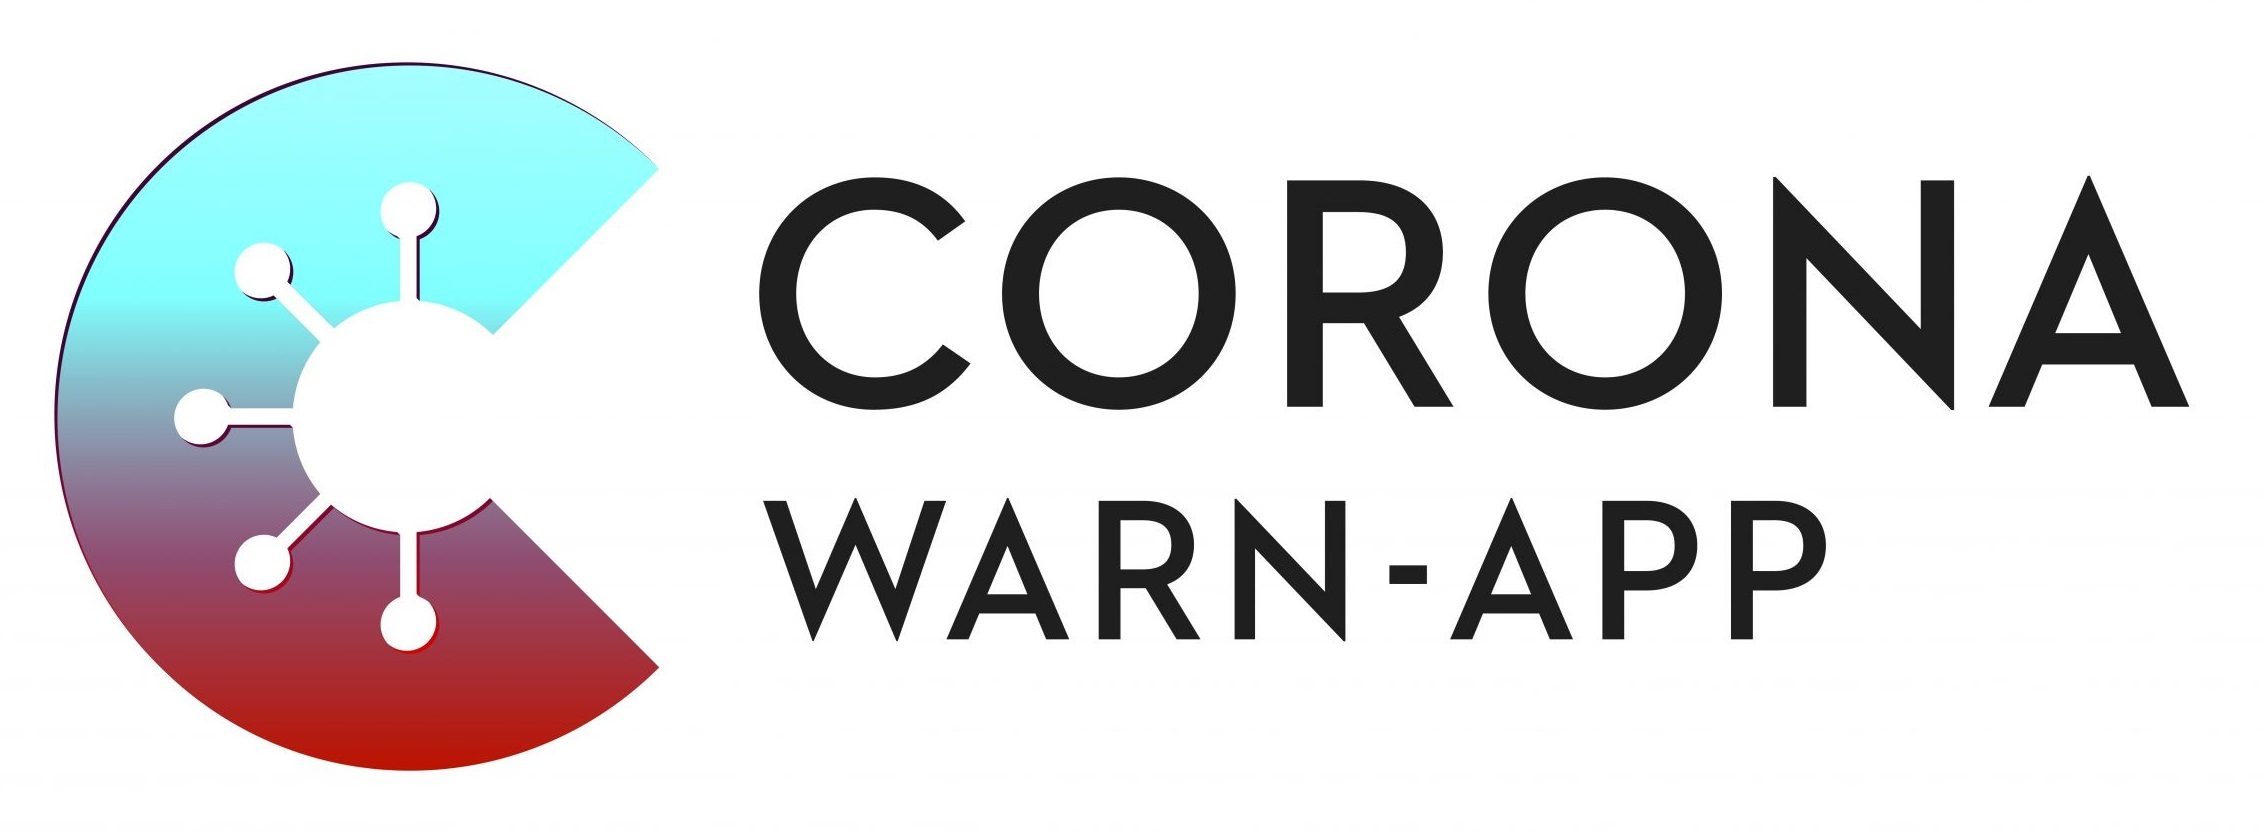 3 Corona Warn App